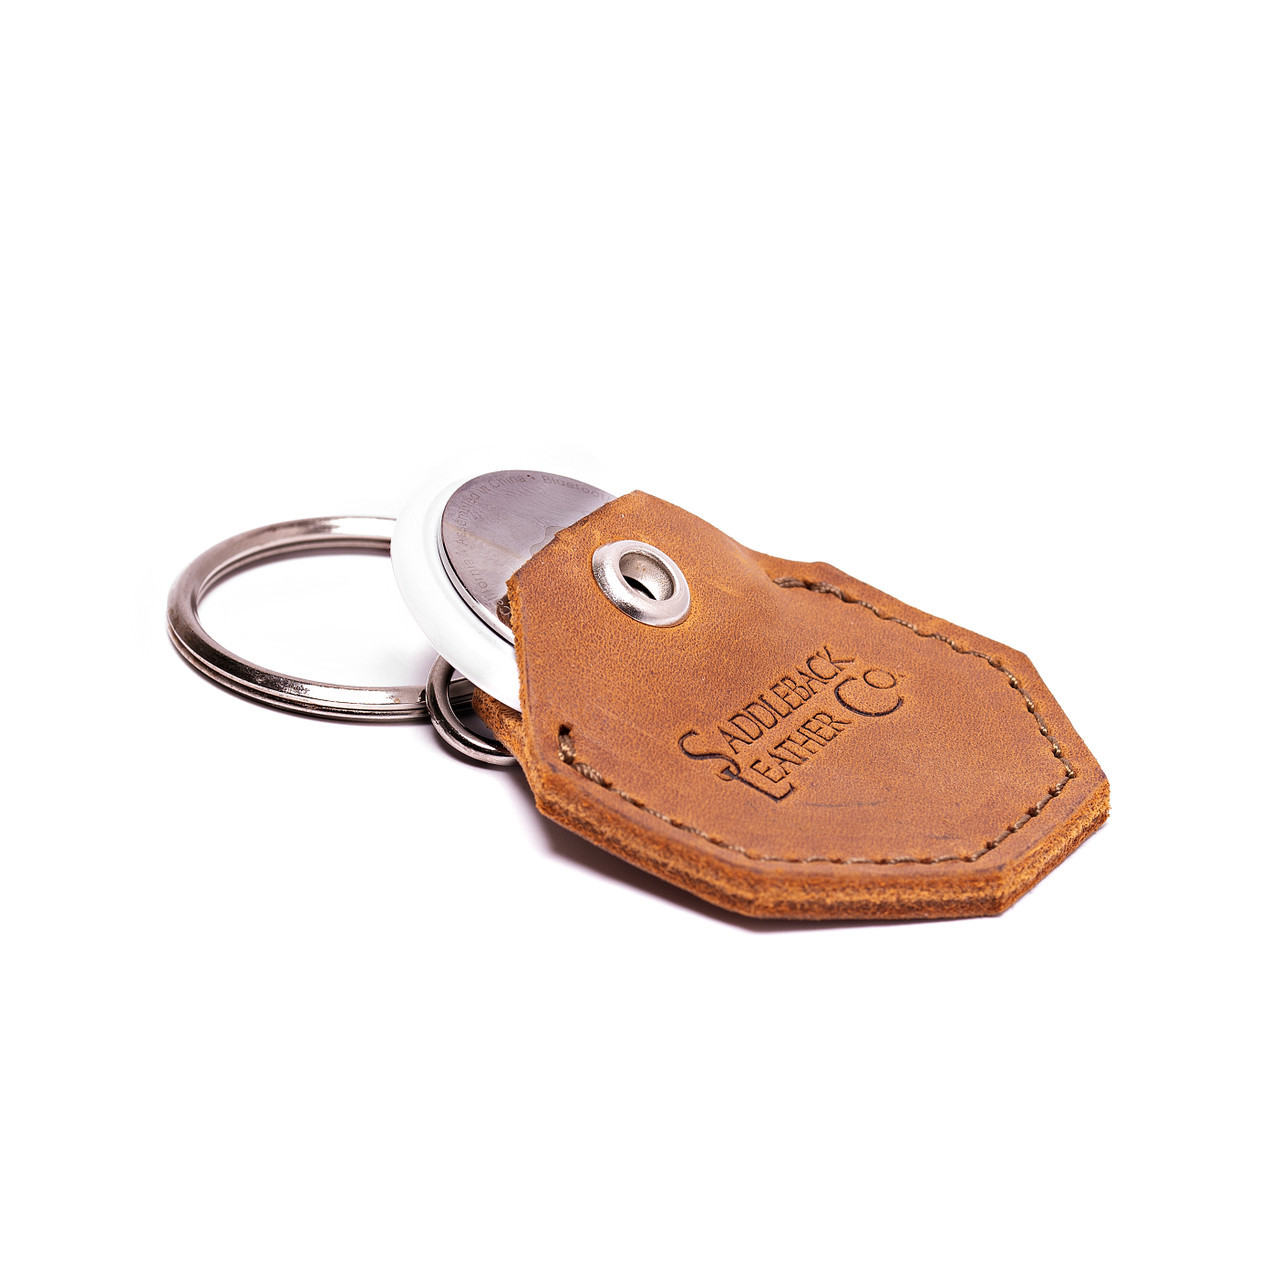 Saddleback Leather AirTag Keychain Clip - The Sleeve